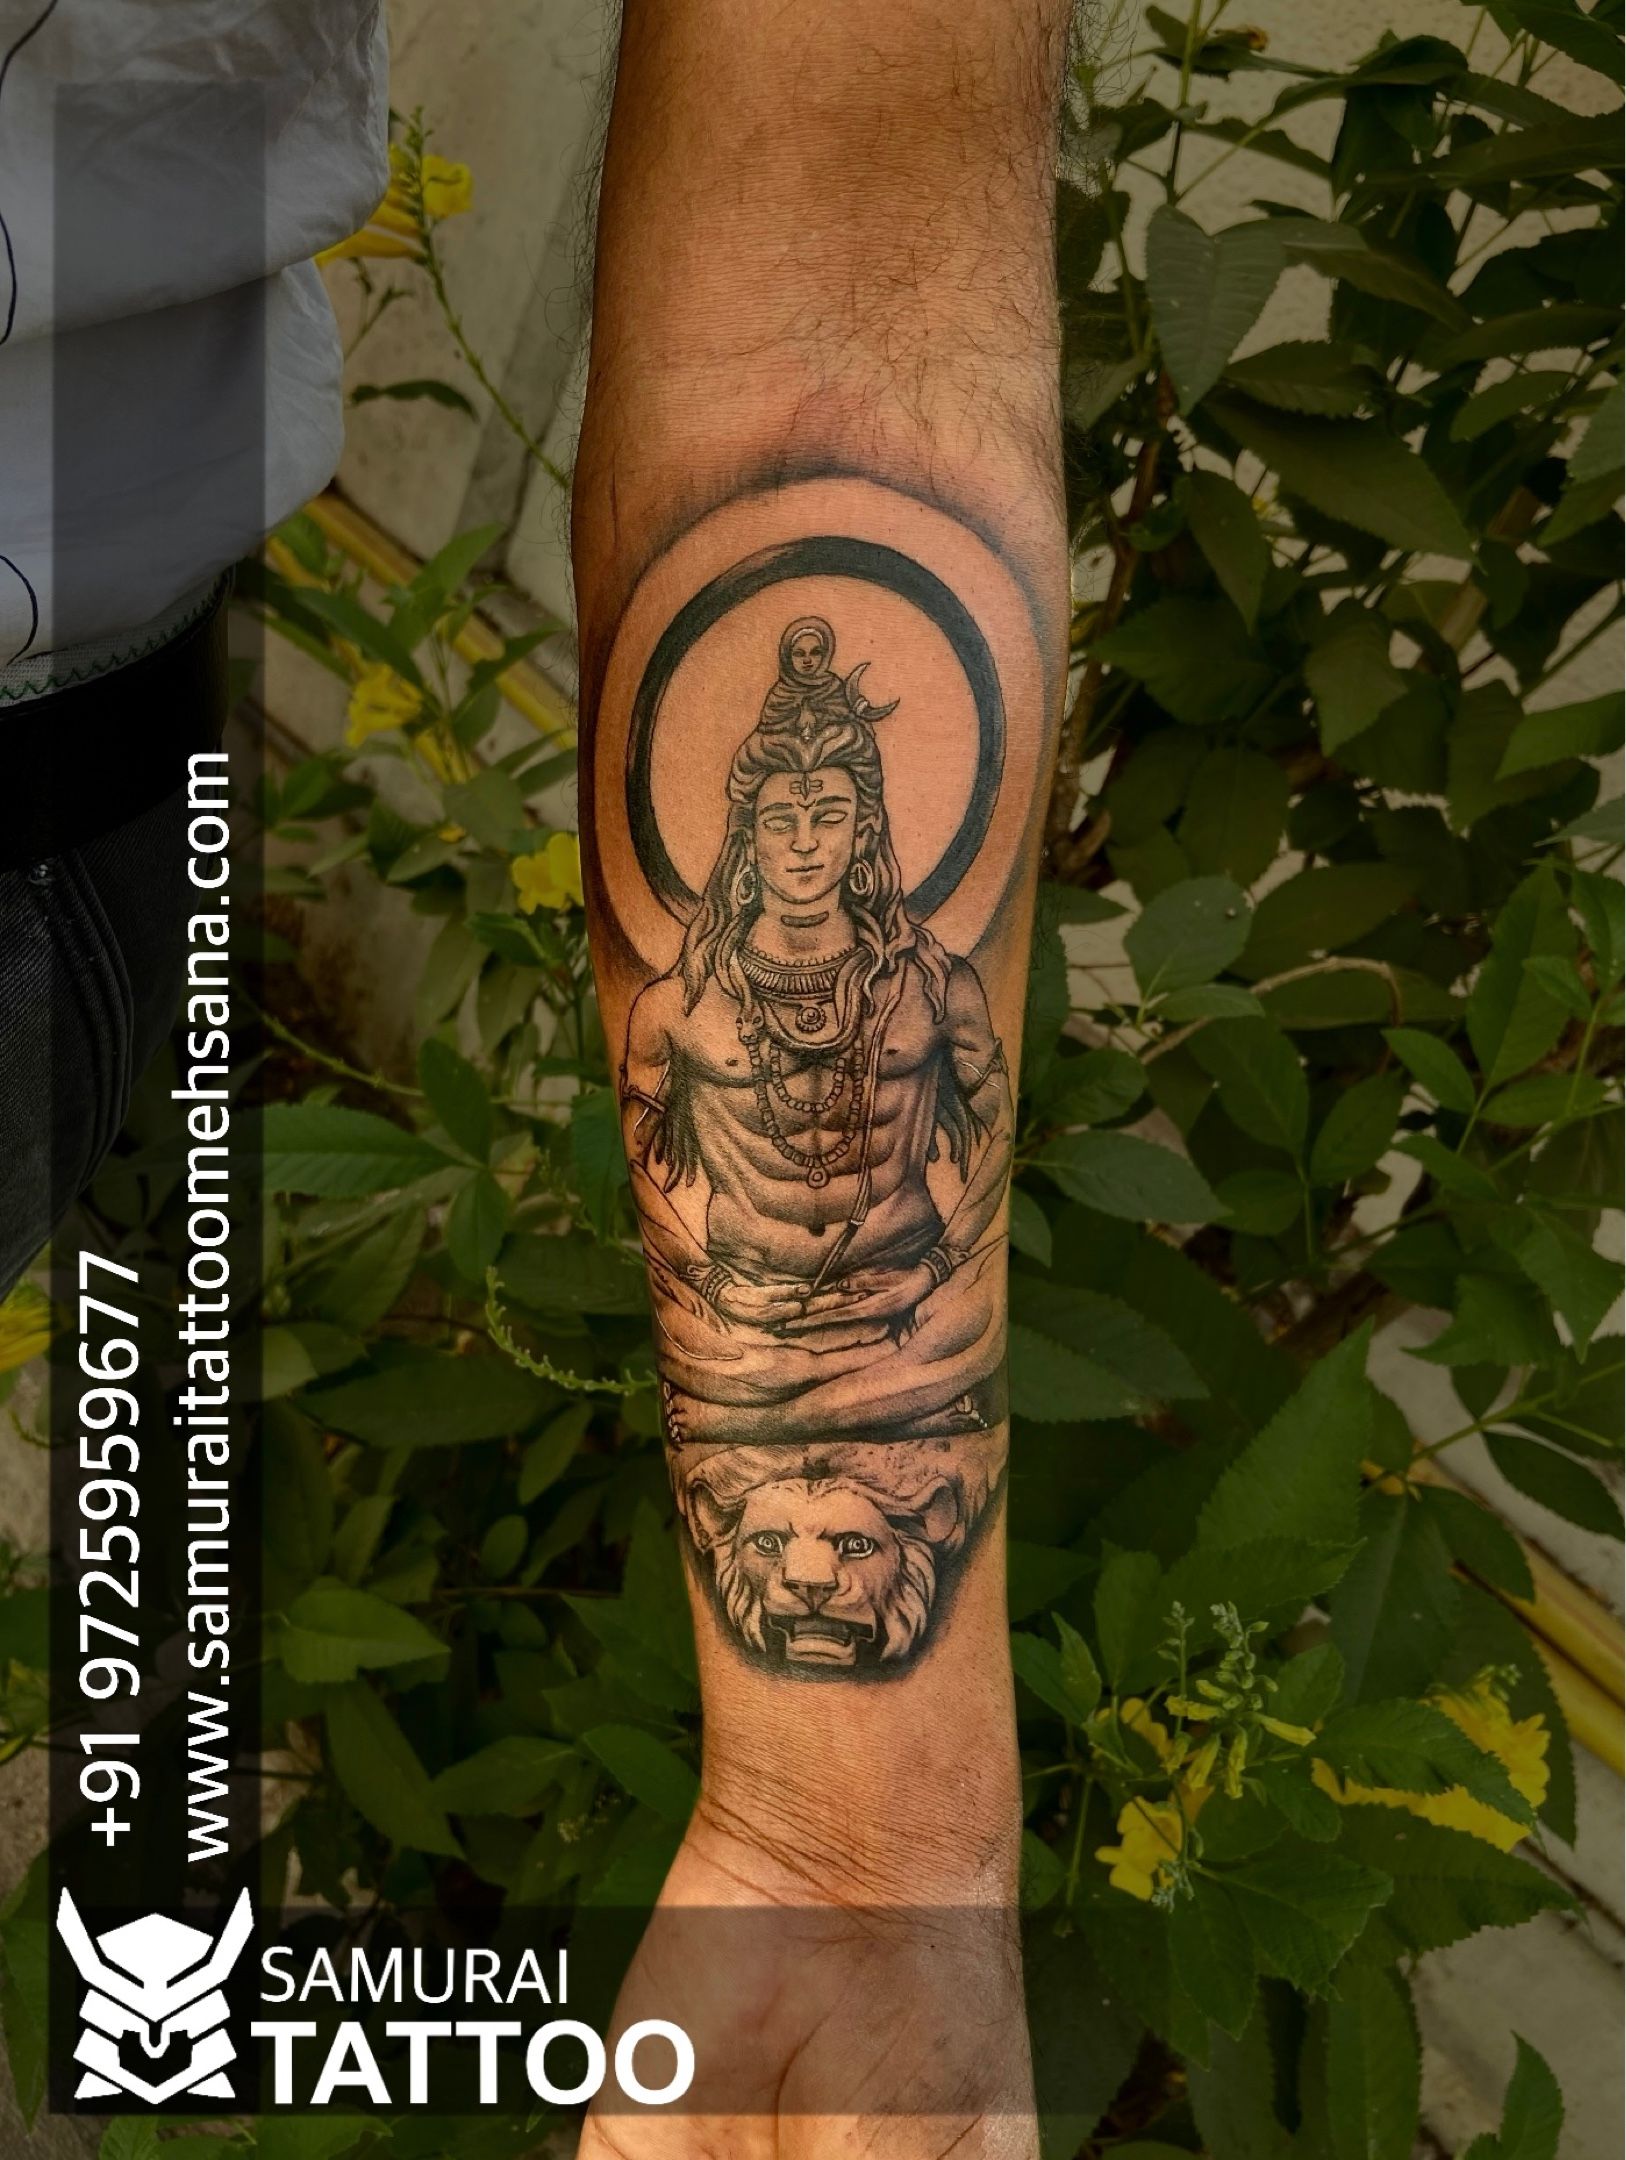 Shiva Tattoo | lord shiva Tattoos | Bholenath Tattoo | mahadev Tattoo  |Samurai Tattoo Mehsana | Bholenath tattoo, Shiva tattoo, Mahadev tattoo